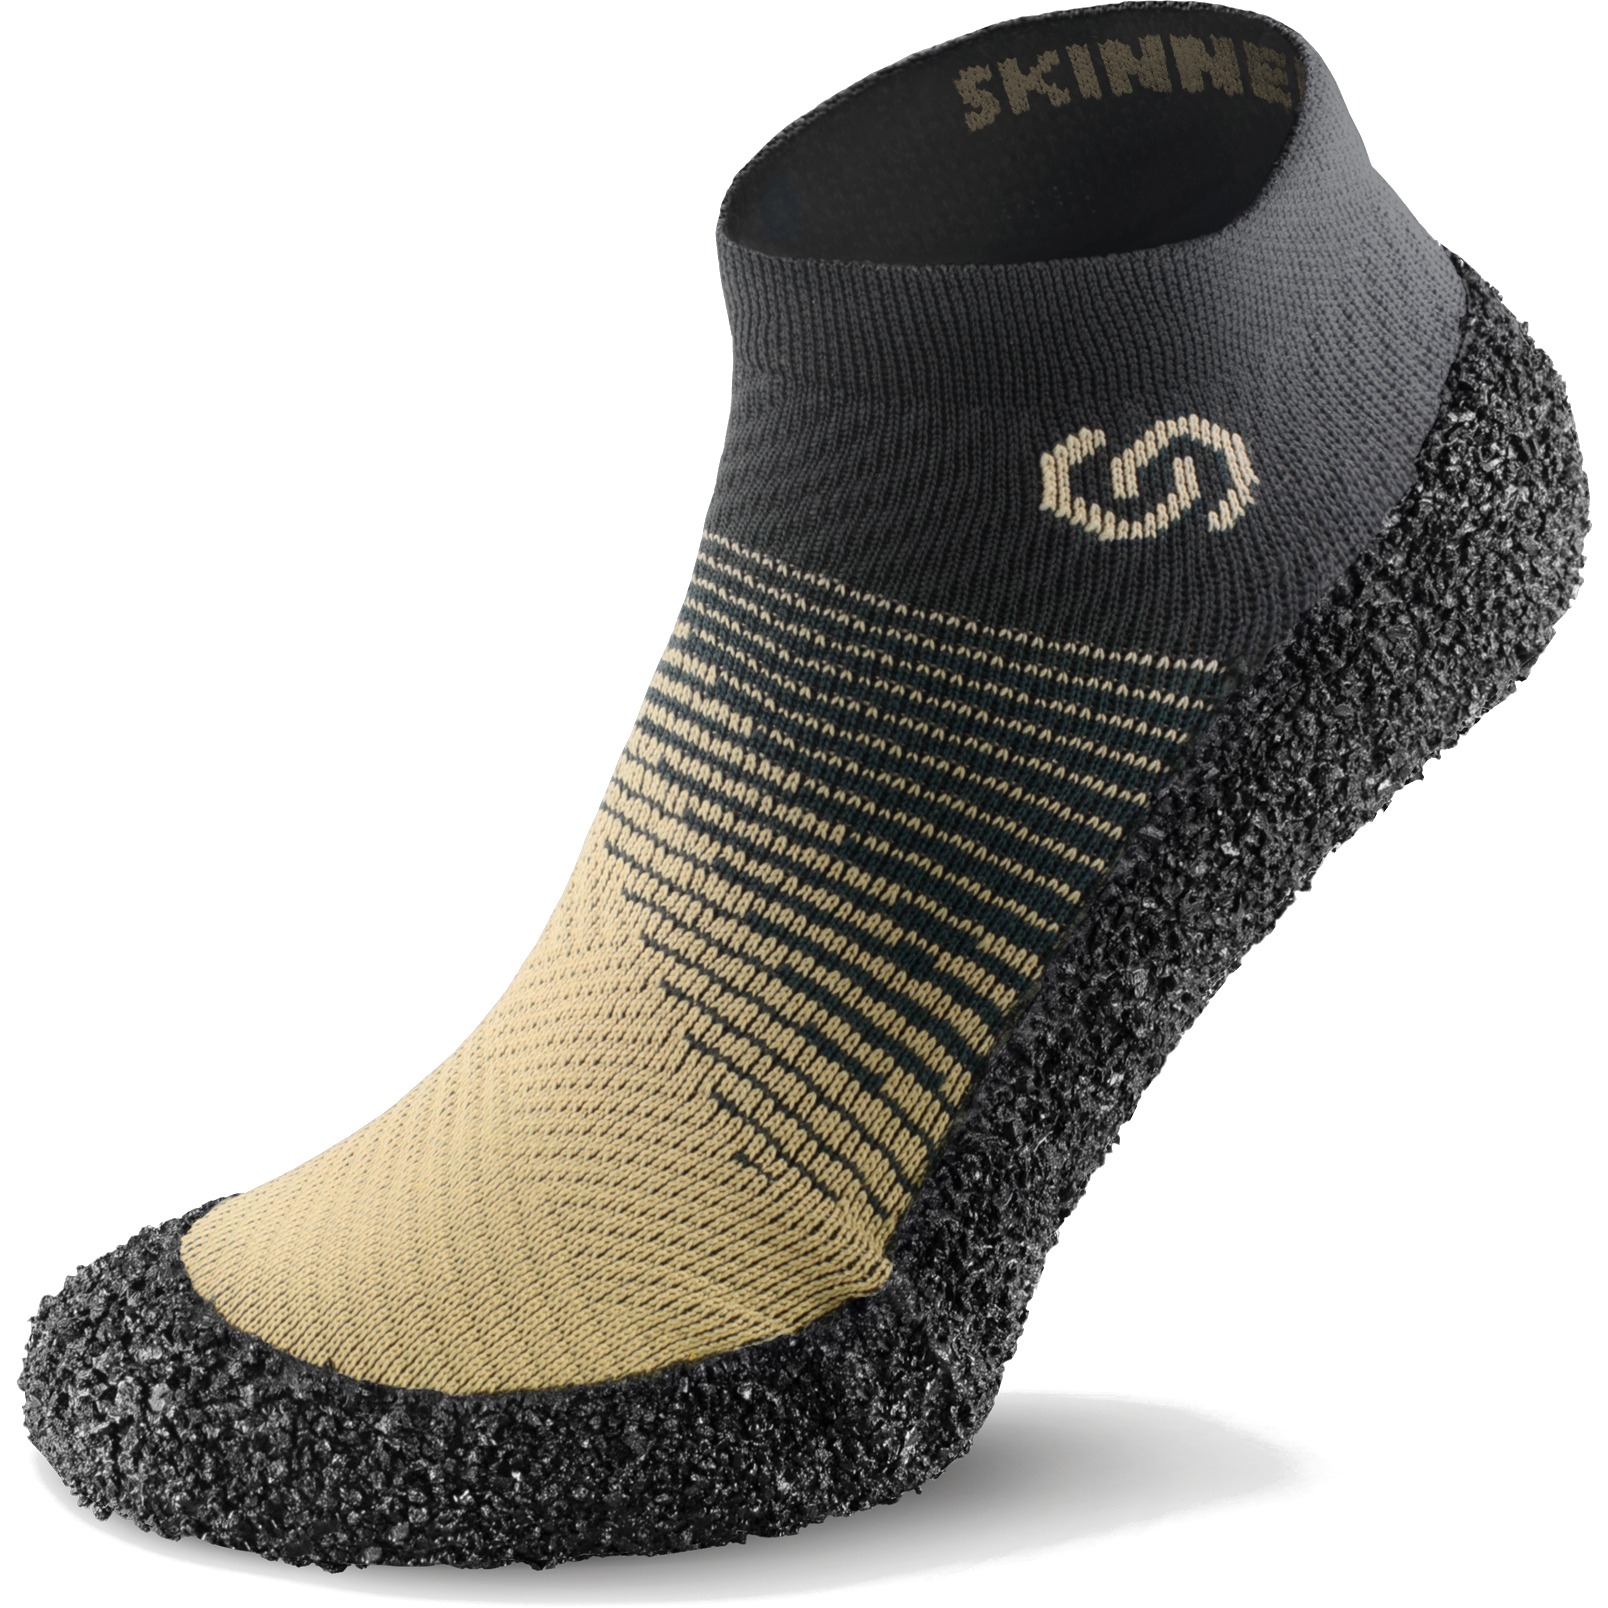 Productfoto van Skinners Sock Shoes 2.0 - sand